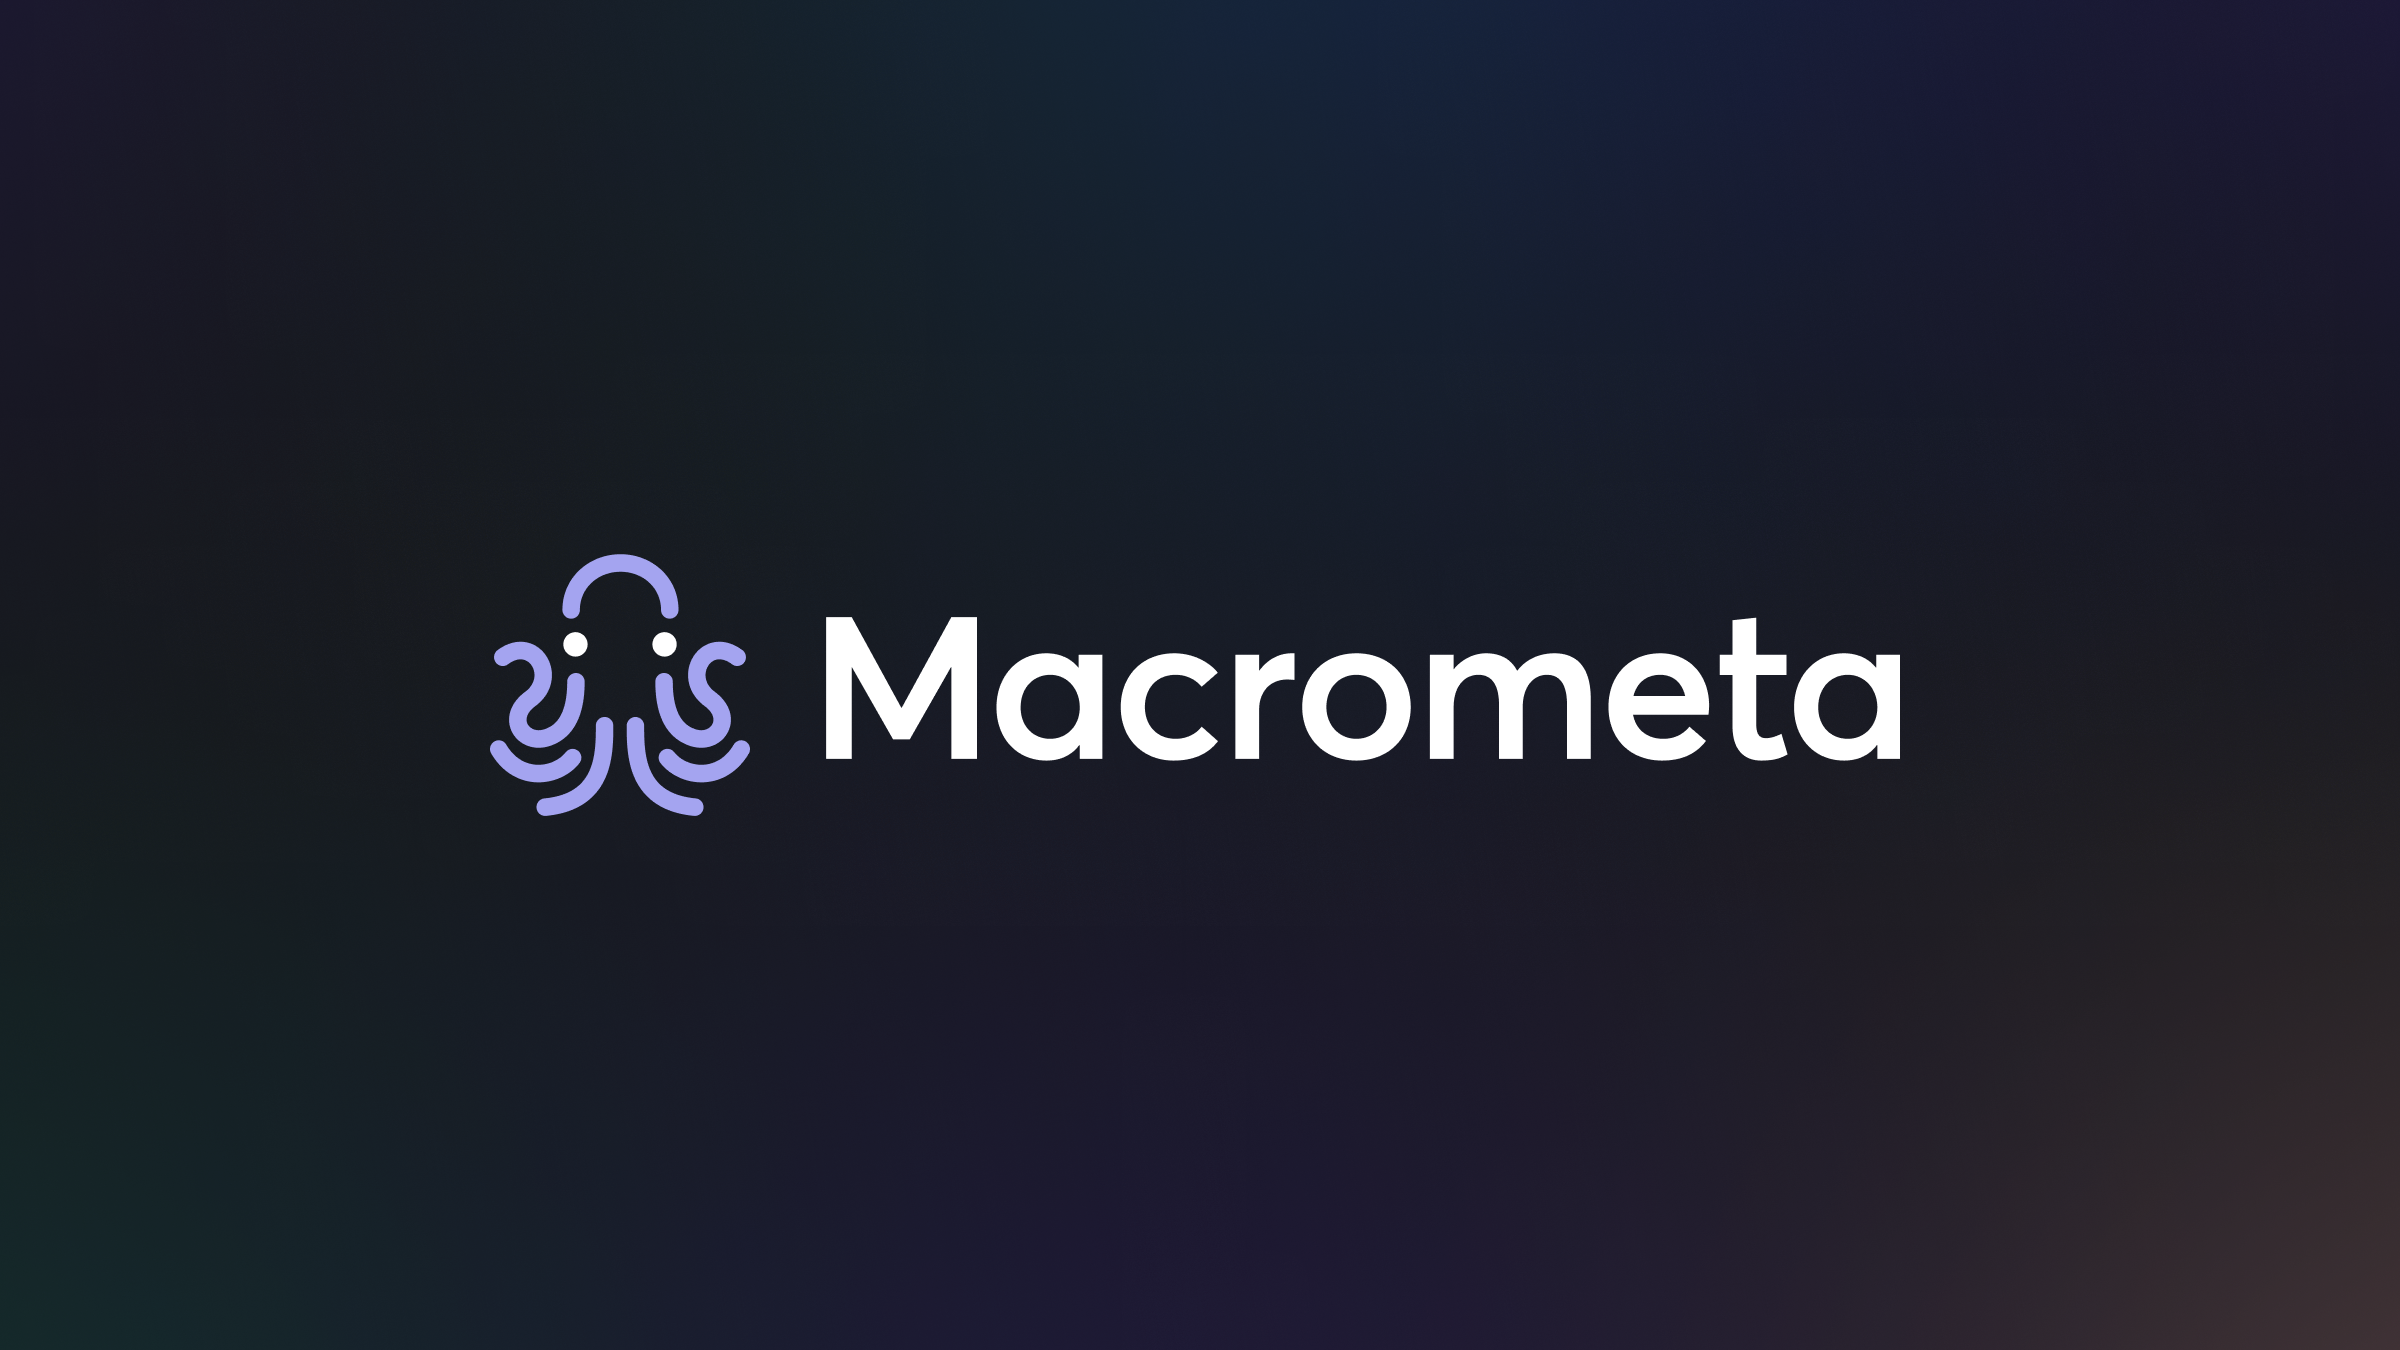 Macrometa logo